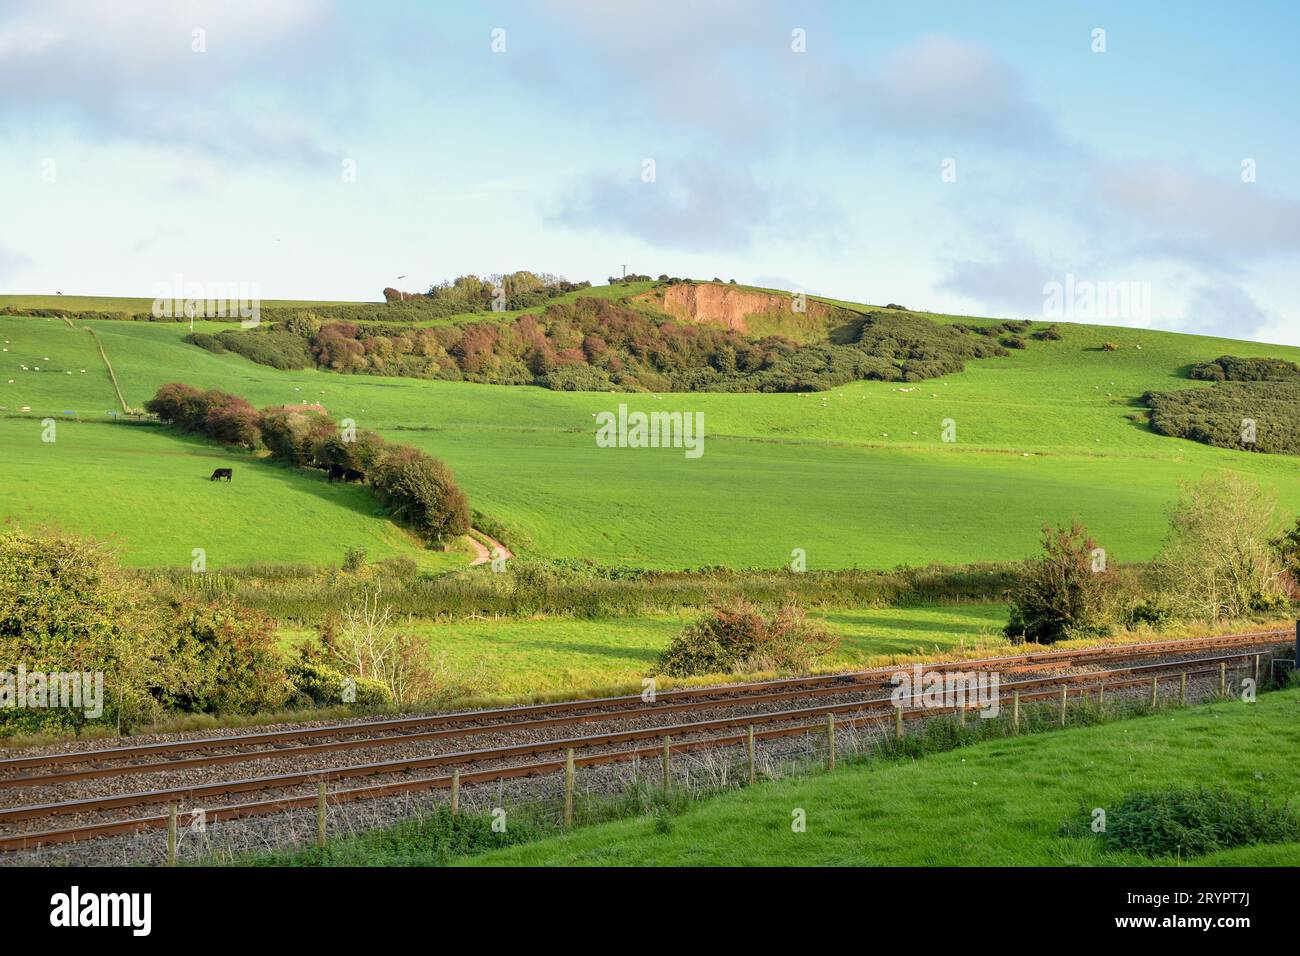 Une ligne de chemin de fer à travers la campagne de Cumbria, avec du bétail visible dans les champs lointains. Banque D'Images